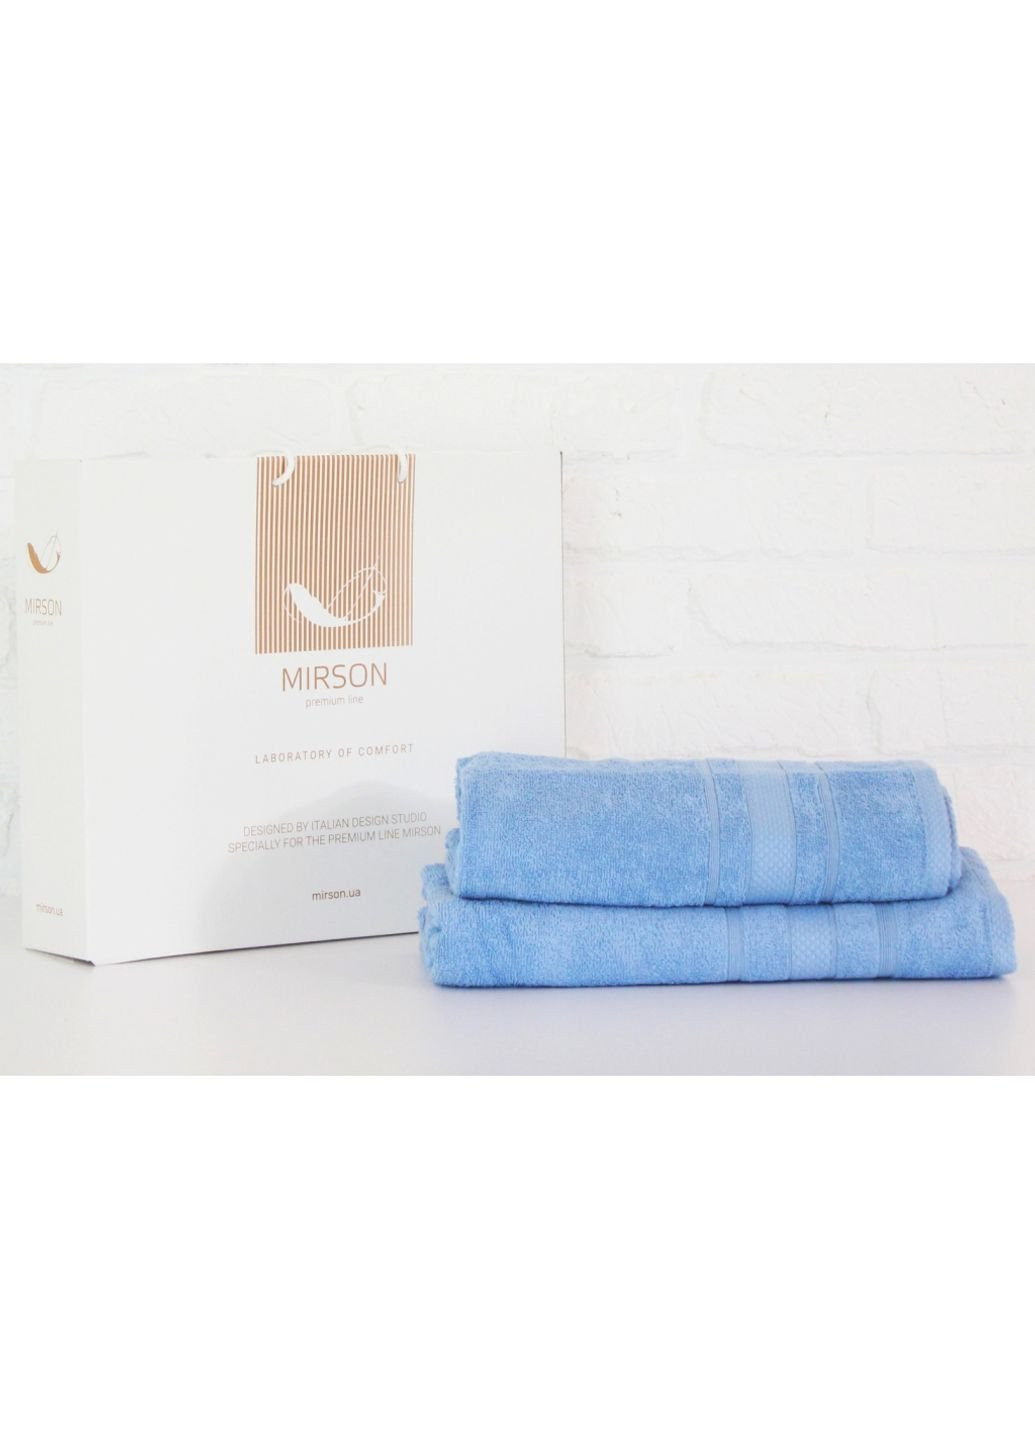 Mirson полотенце набор банных №5072 elite softness cornflower 50х90, 70х140 (2200003183108) голубой производство - Украина